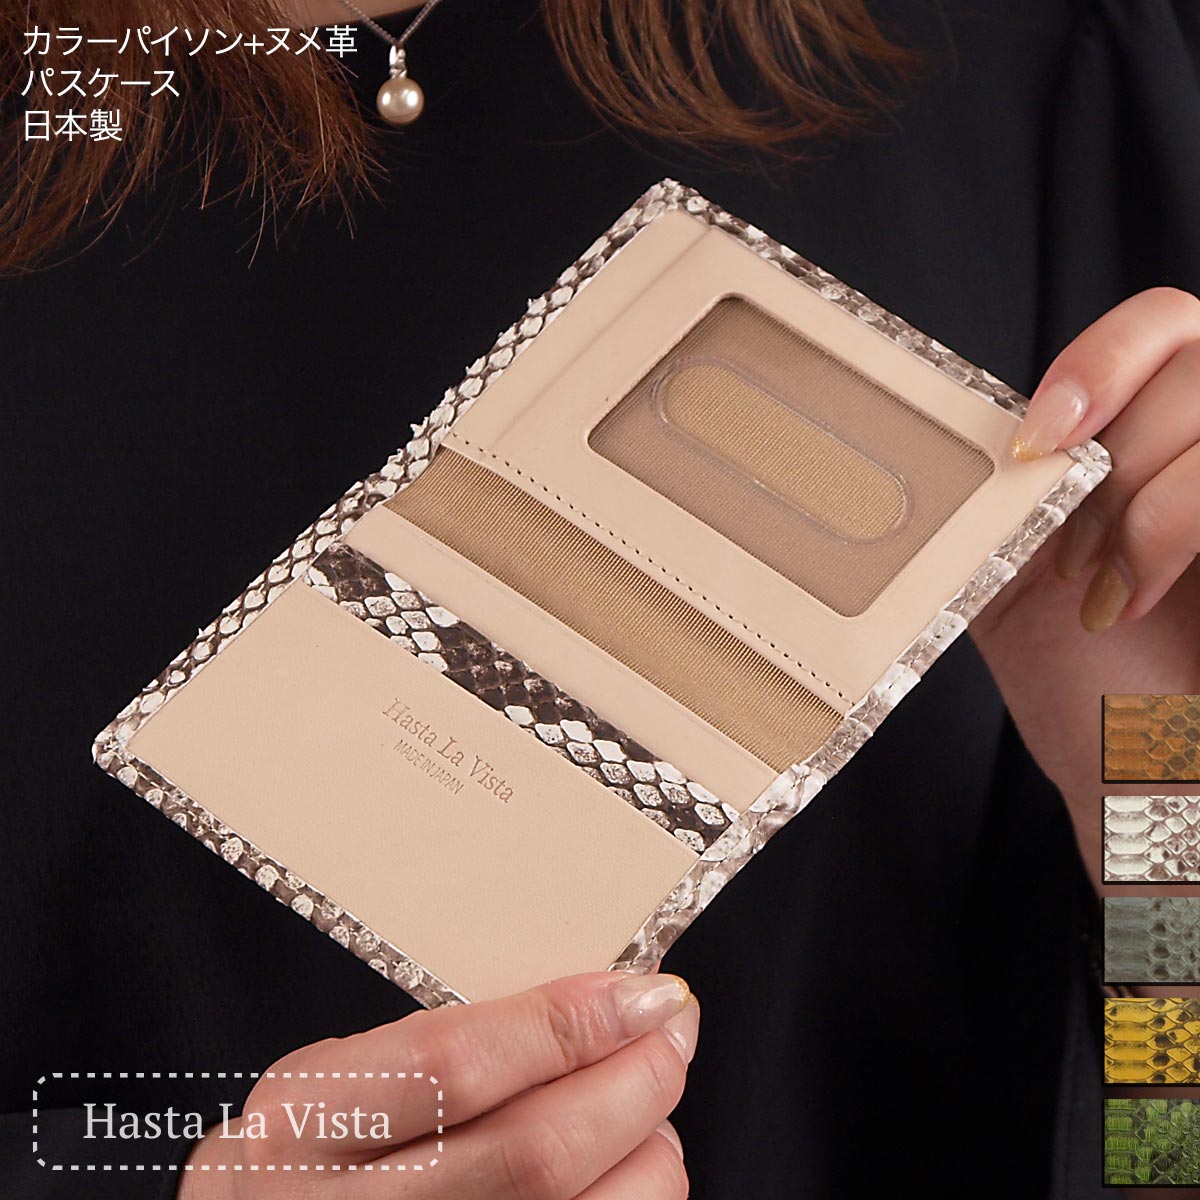 パスケース 本革 パイソン革 日本製 薄い 定期入れ メンズ かっこいい レディース カード入 蛇革 カードケース がま口工房mami